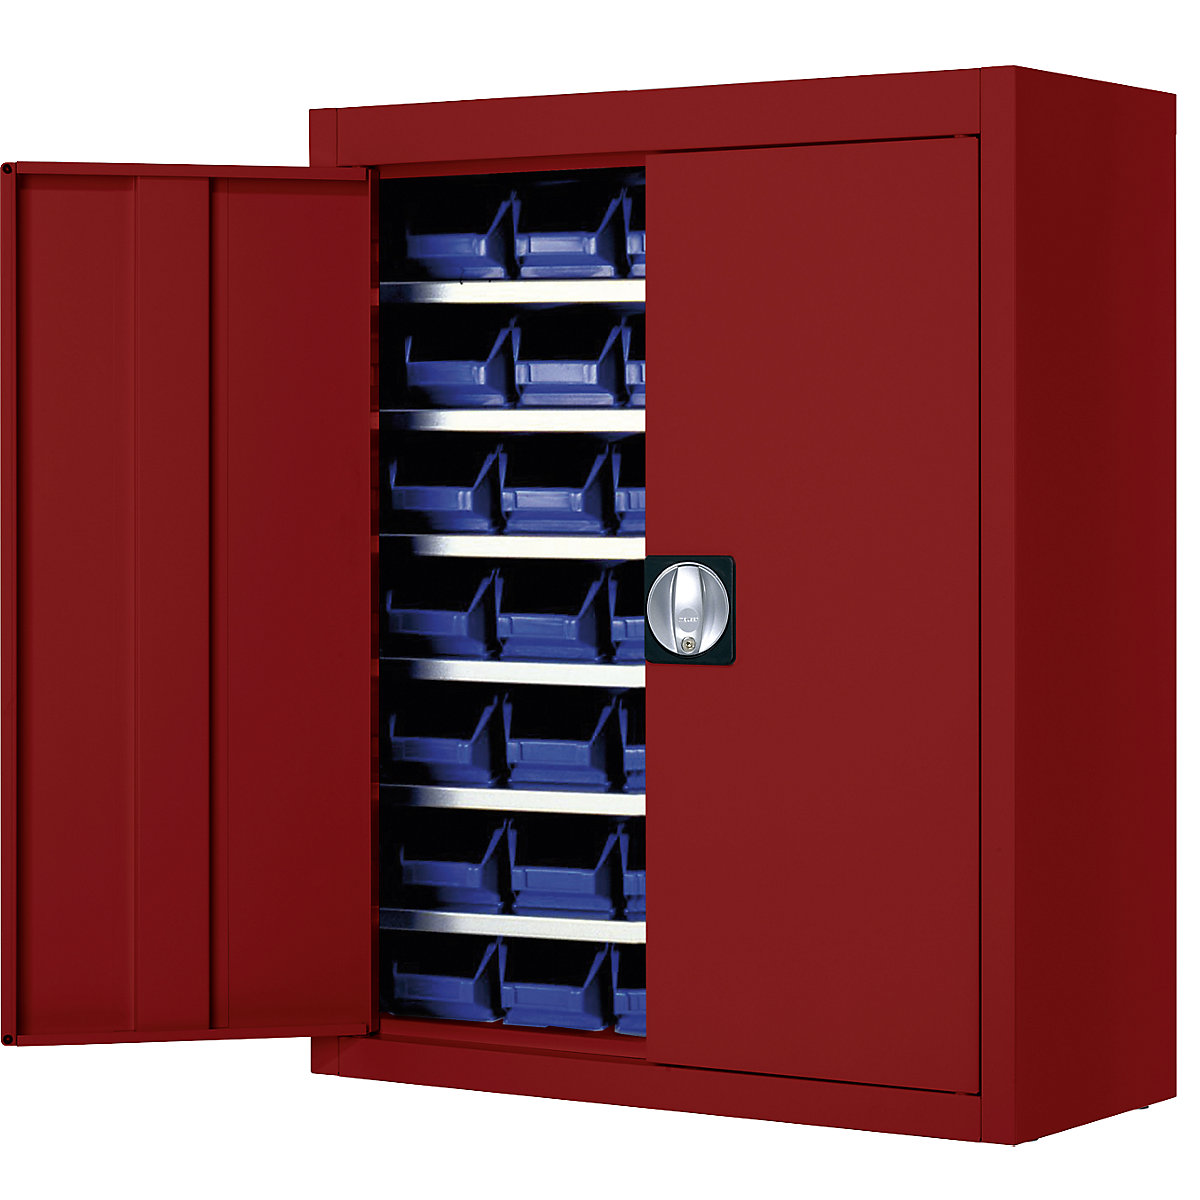 Skladišni ormar s otvorenim skladišnim kutijama – mauser, VxŠxD 820 x 680 x 280 mm, u jednoj boji, u crvenoj boji, 42 kutije, od 3 kom.-5